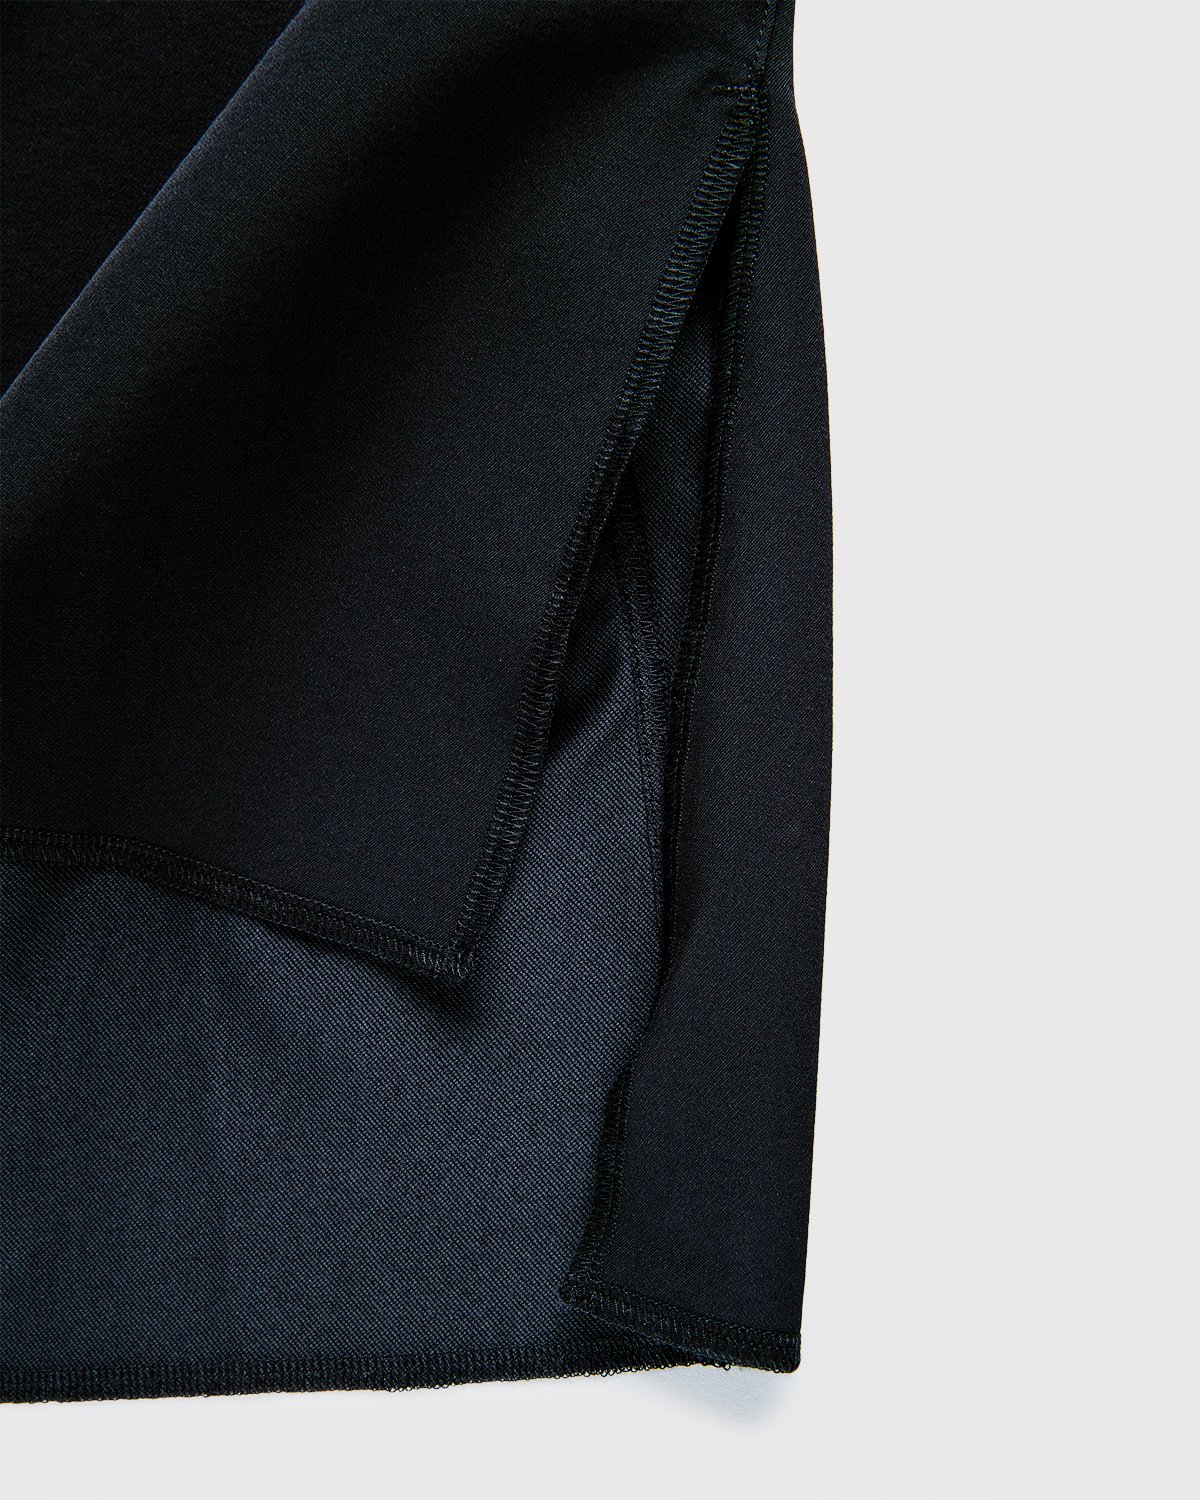 ACRONYM - S24-DS Short Sleeve Black - Clothing - Black - Image 8